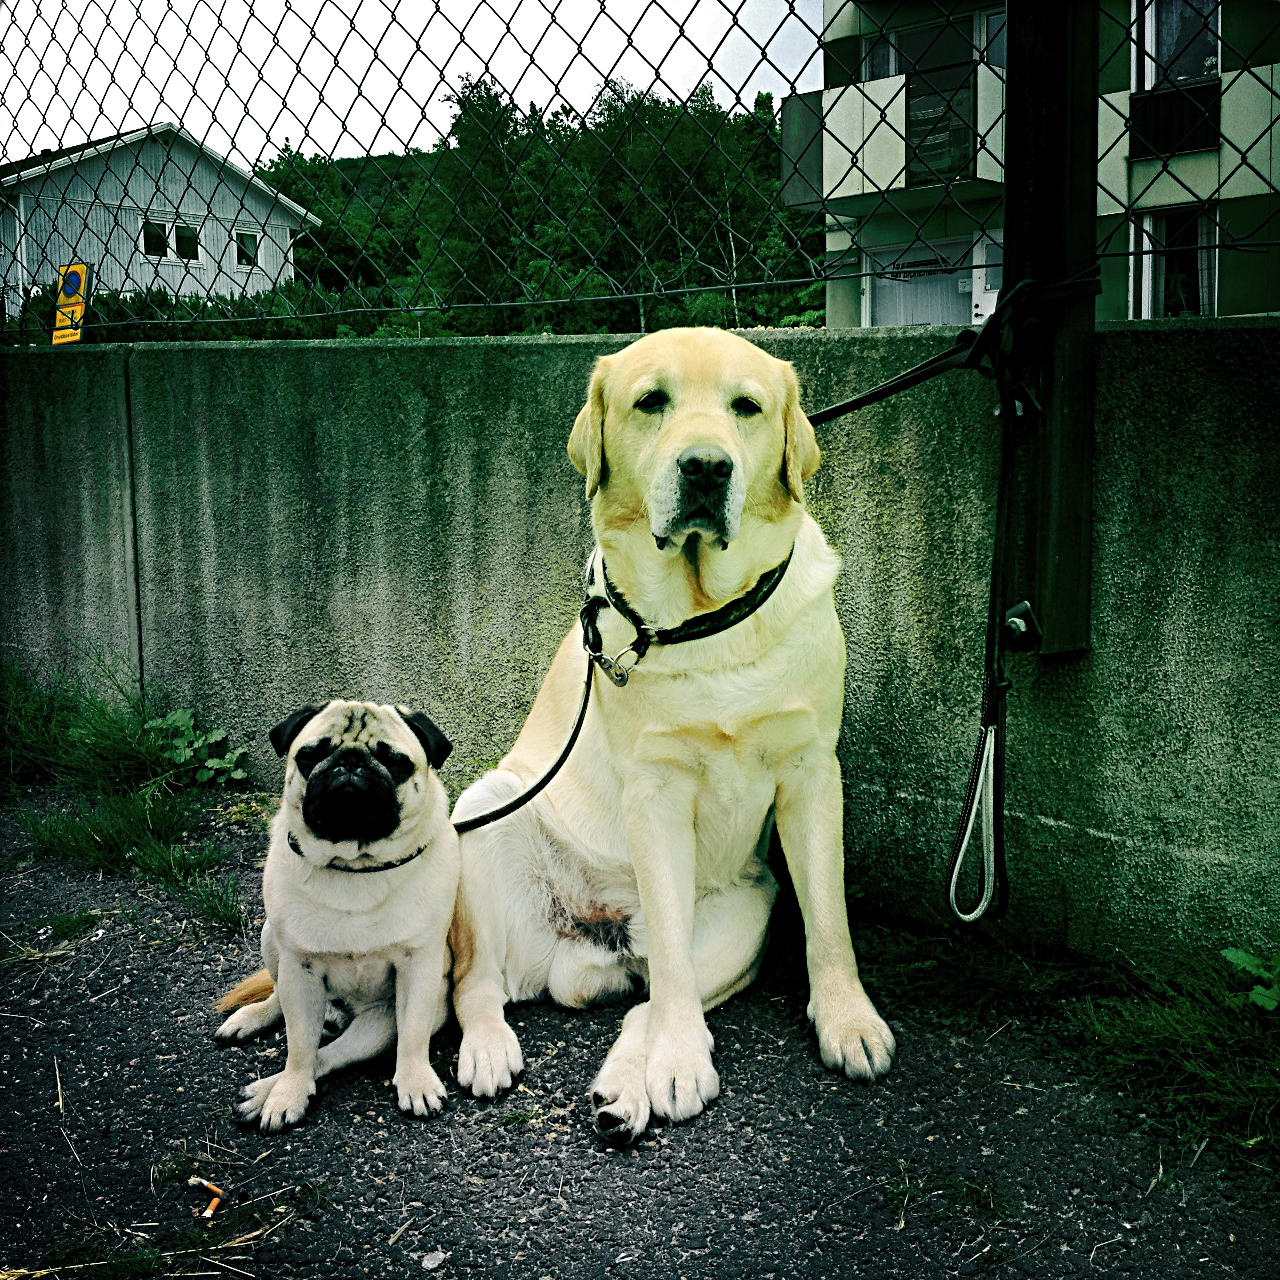 Ein großer Hund rechts, angeleint neben einem kleinen Hund vom Typ Mops sitzem vor einer hundesitzgrößehohen betonmauer, auf der Maschendrahtzaun gespannt ist.